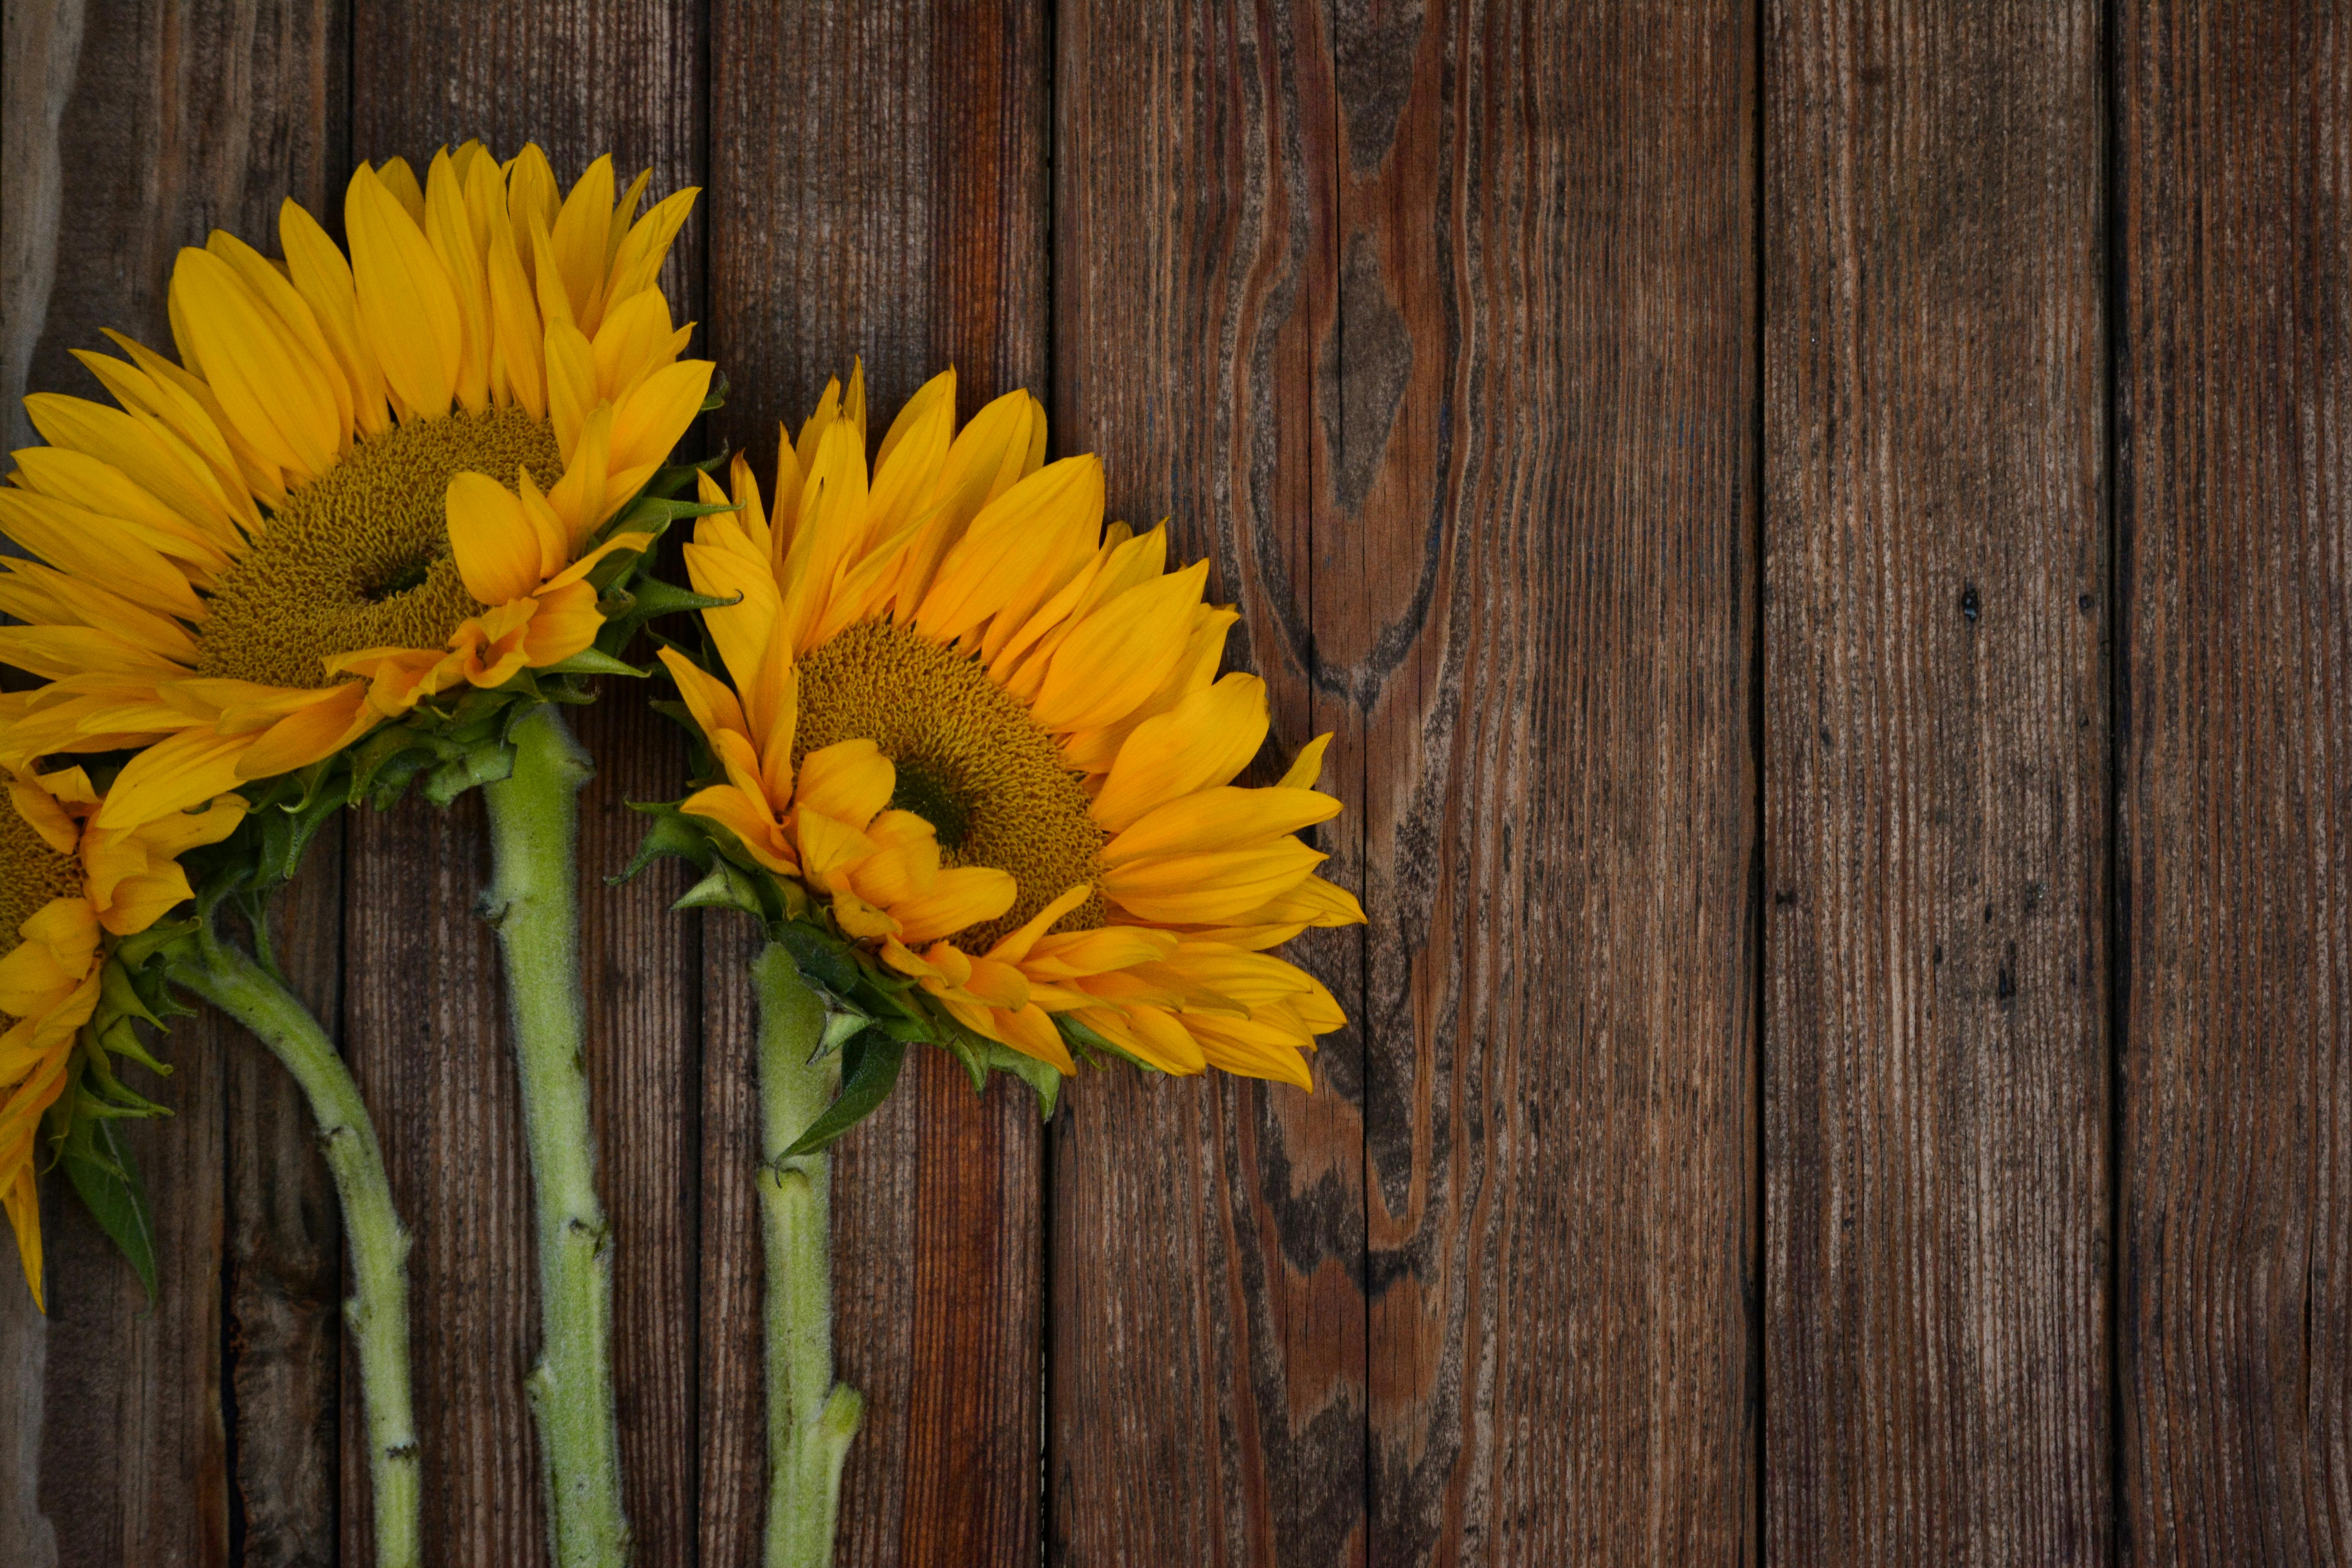 Ảnh hoa hướng dương: Có thể bạn đã nhìn thấy hoa hướng dương trong nhiều địa điểm khác nhau, nhưng hình ảnh hoa hướng dương sẽ mang đến cho bạn một cảm xúc hoàn toàn mới. Từ chi tiết nhỏ nhất trên cánh hoa đến sắc vàng rực rỡ, chúng tôi sẽ giúp bạn tìm ra vẻ đẹp hoàn hảo nhất của loài hoa này.